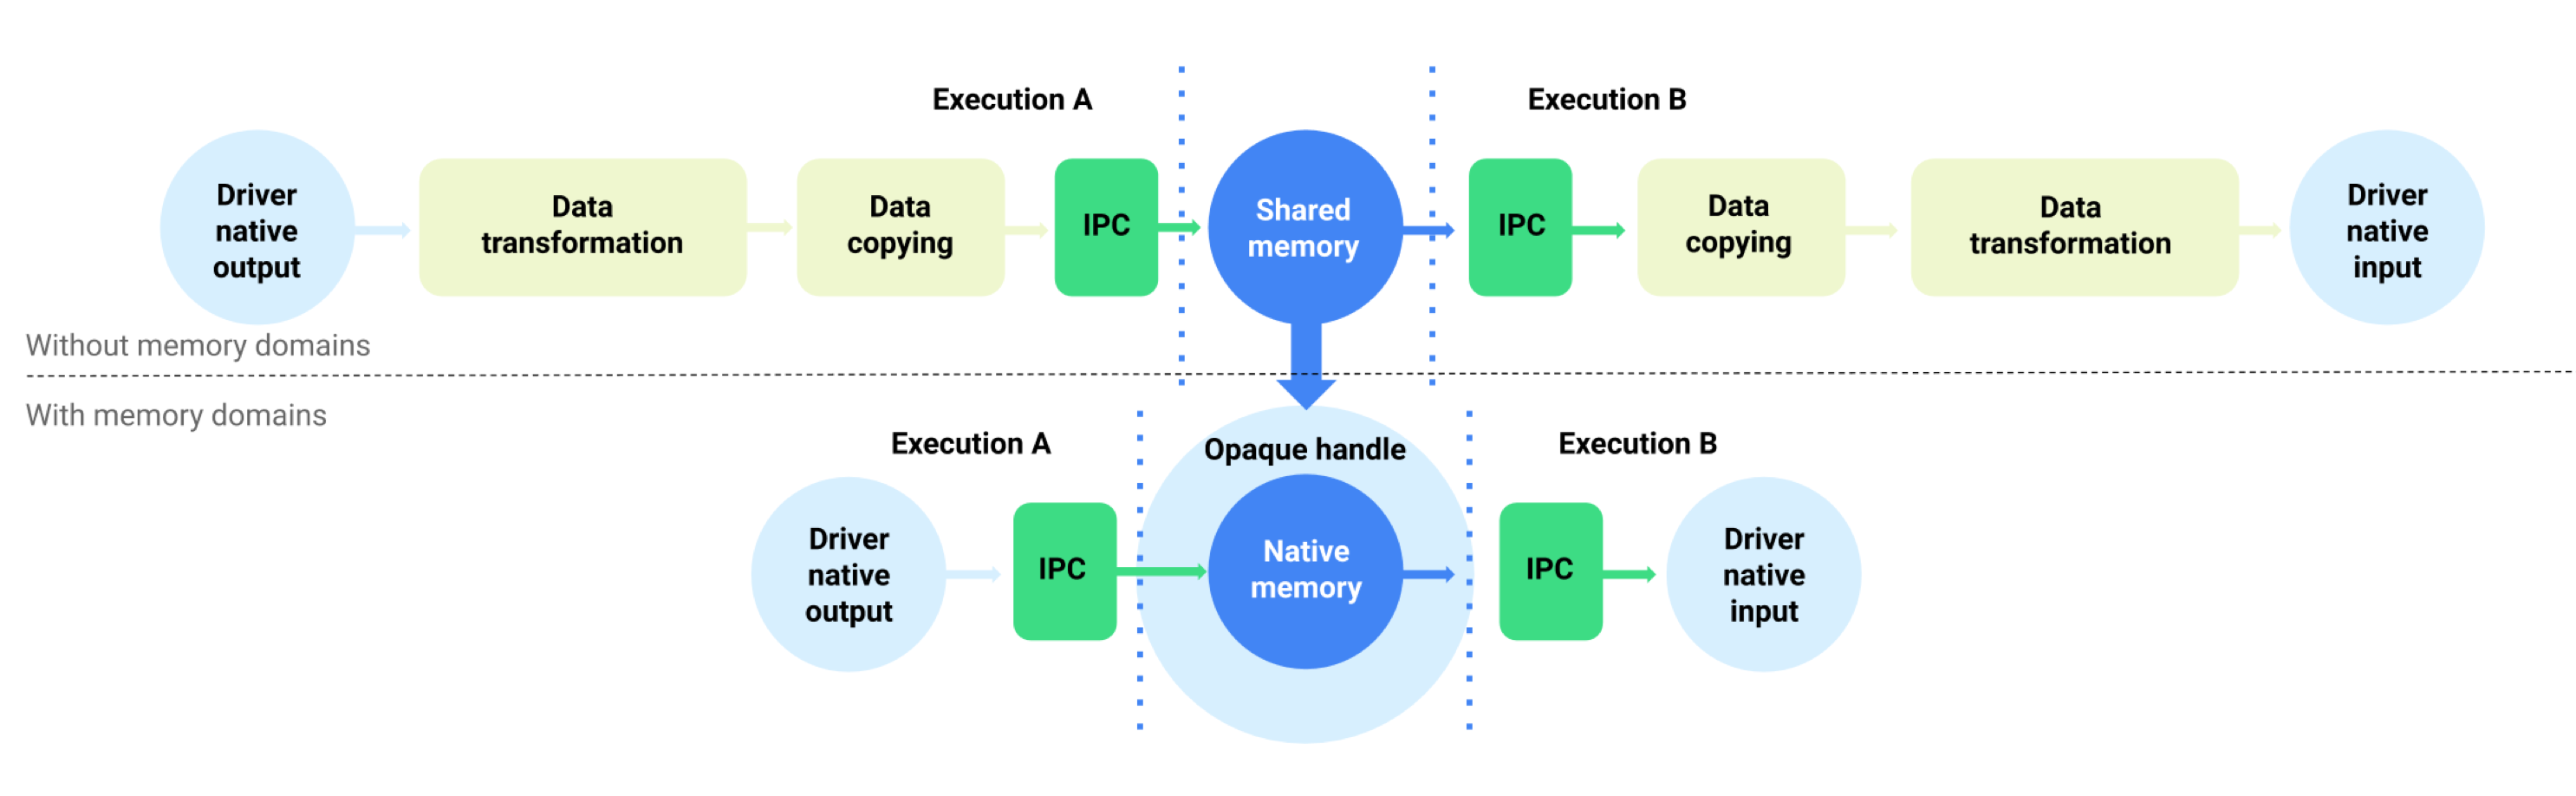 Buforowy przepływ danych z domenami pamięci i bez nich